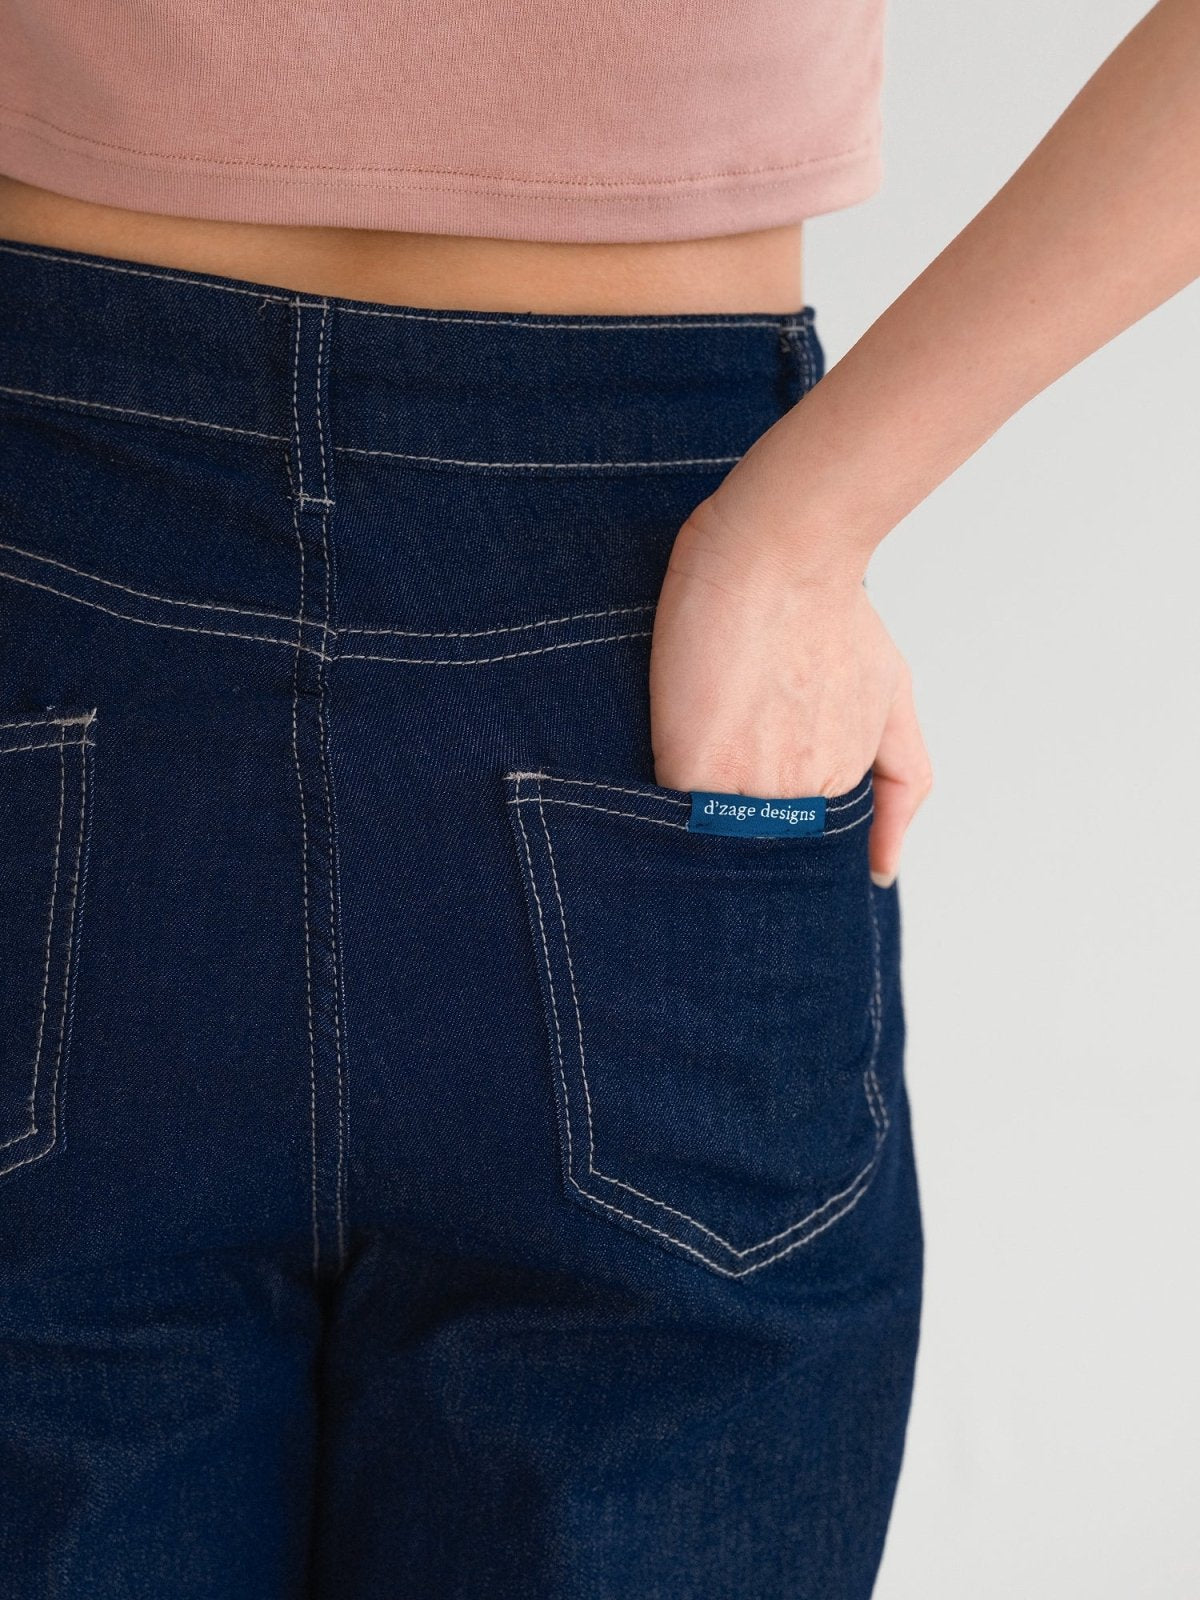 Delilah Unwashed Denim Jeans - DAG-G-220181BlueS - Denim - S - D'ZAGE Designs